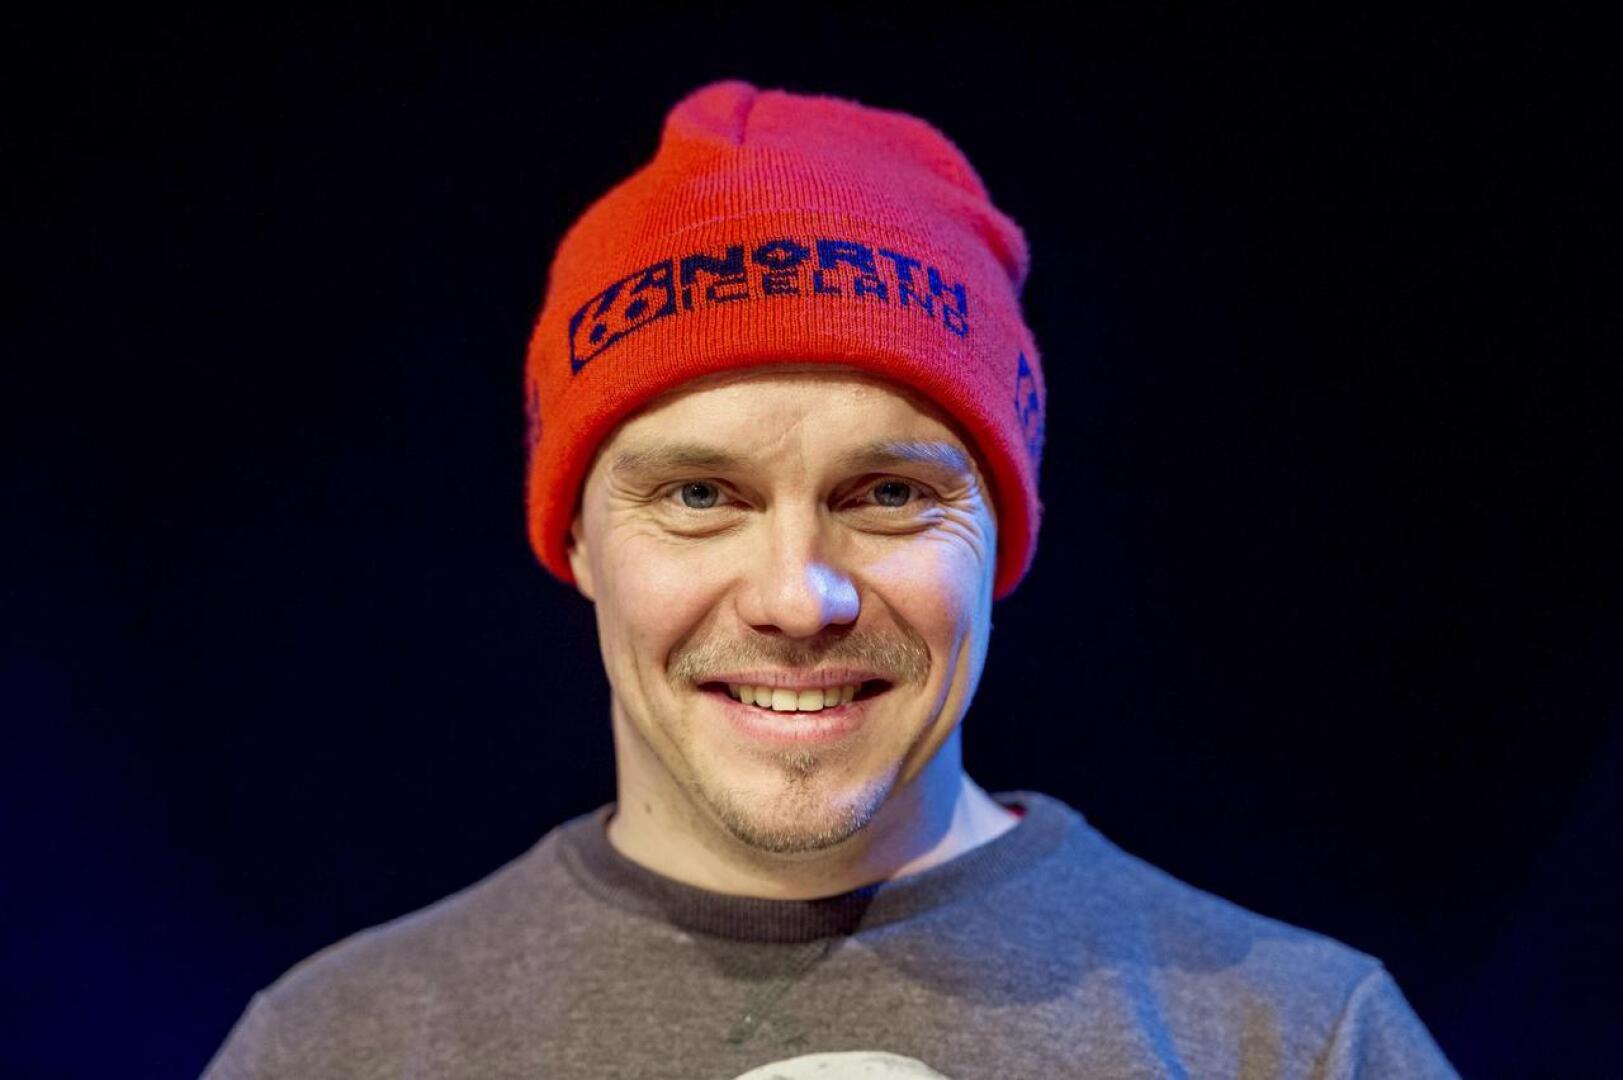 Muun muassa Juho Kuosmasen Hymyilevä mies -elokuvassa pääroolissa näytellyt Jarkko Lahti sai viisivuotisen taiteilija-apurahan.